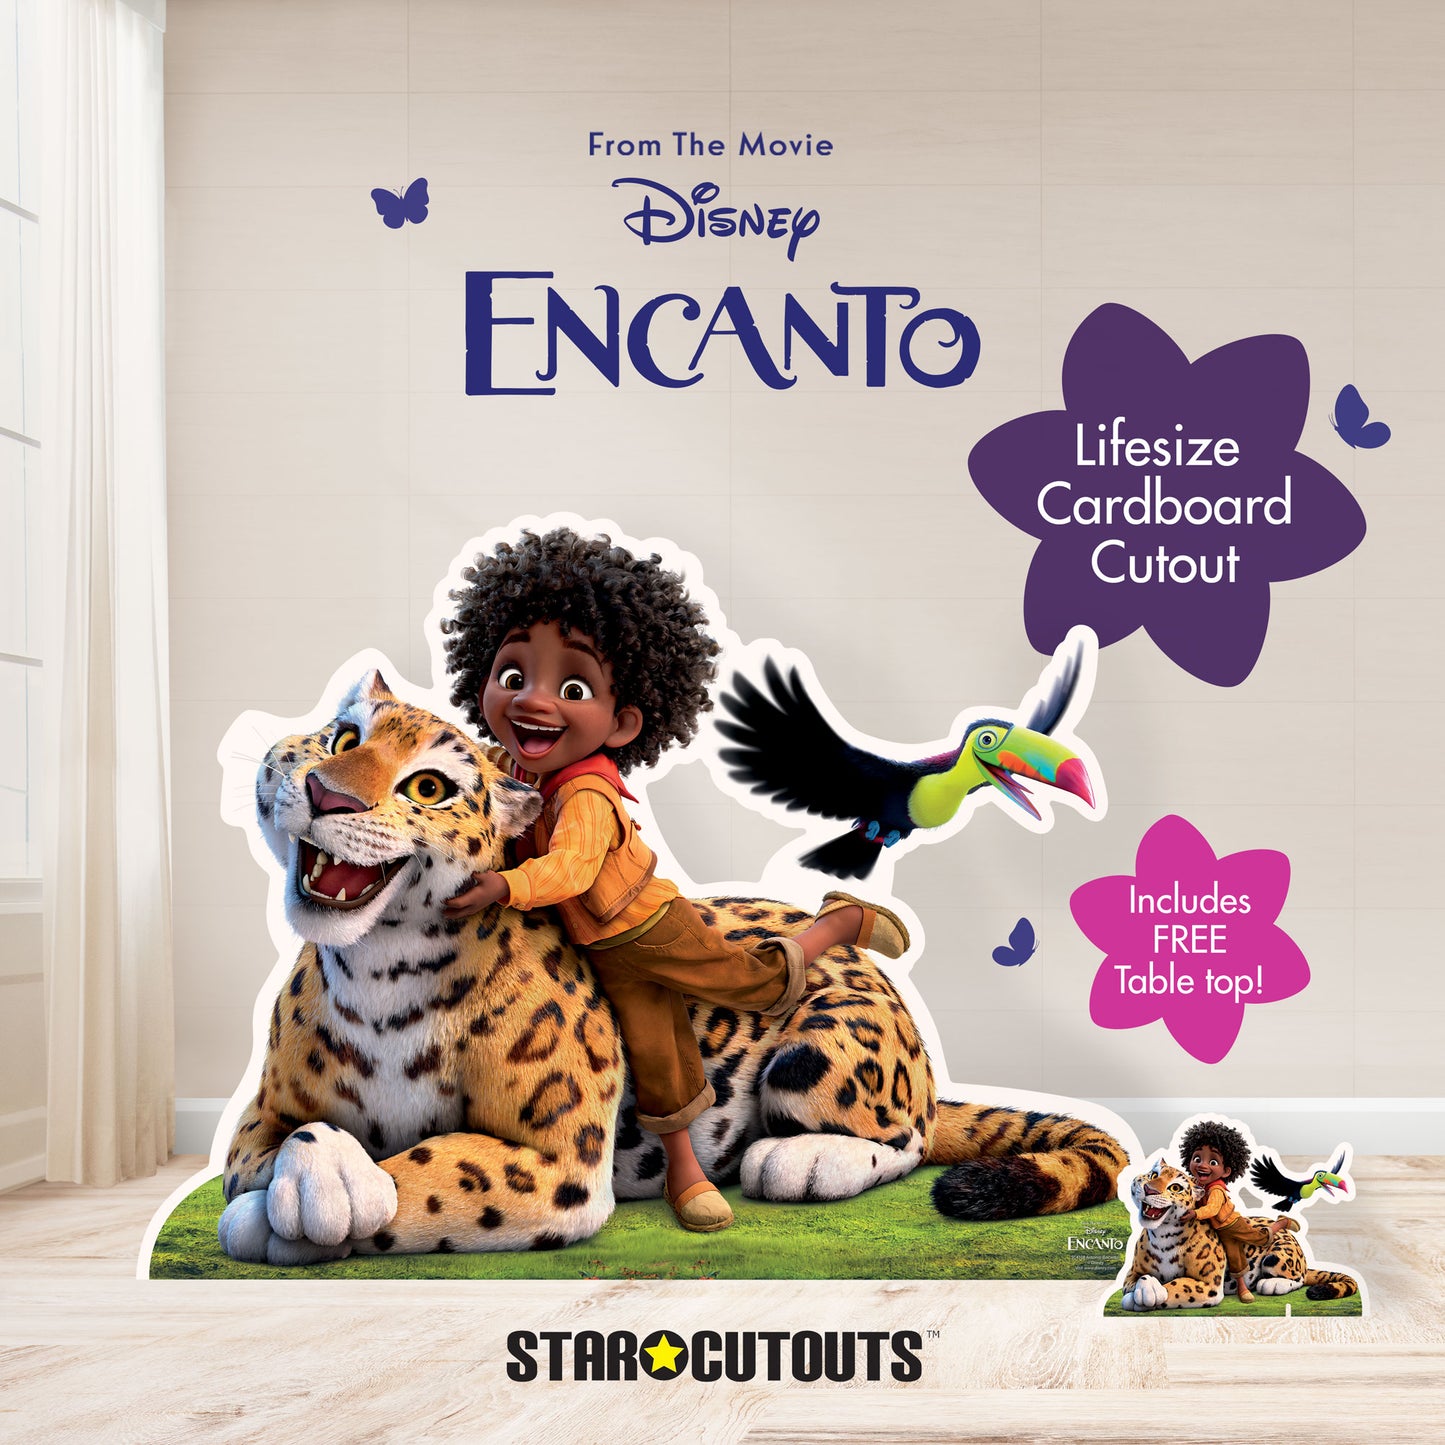 Antonio Encanto Lifesize Cardboard Cutout With Free Mini